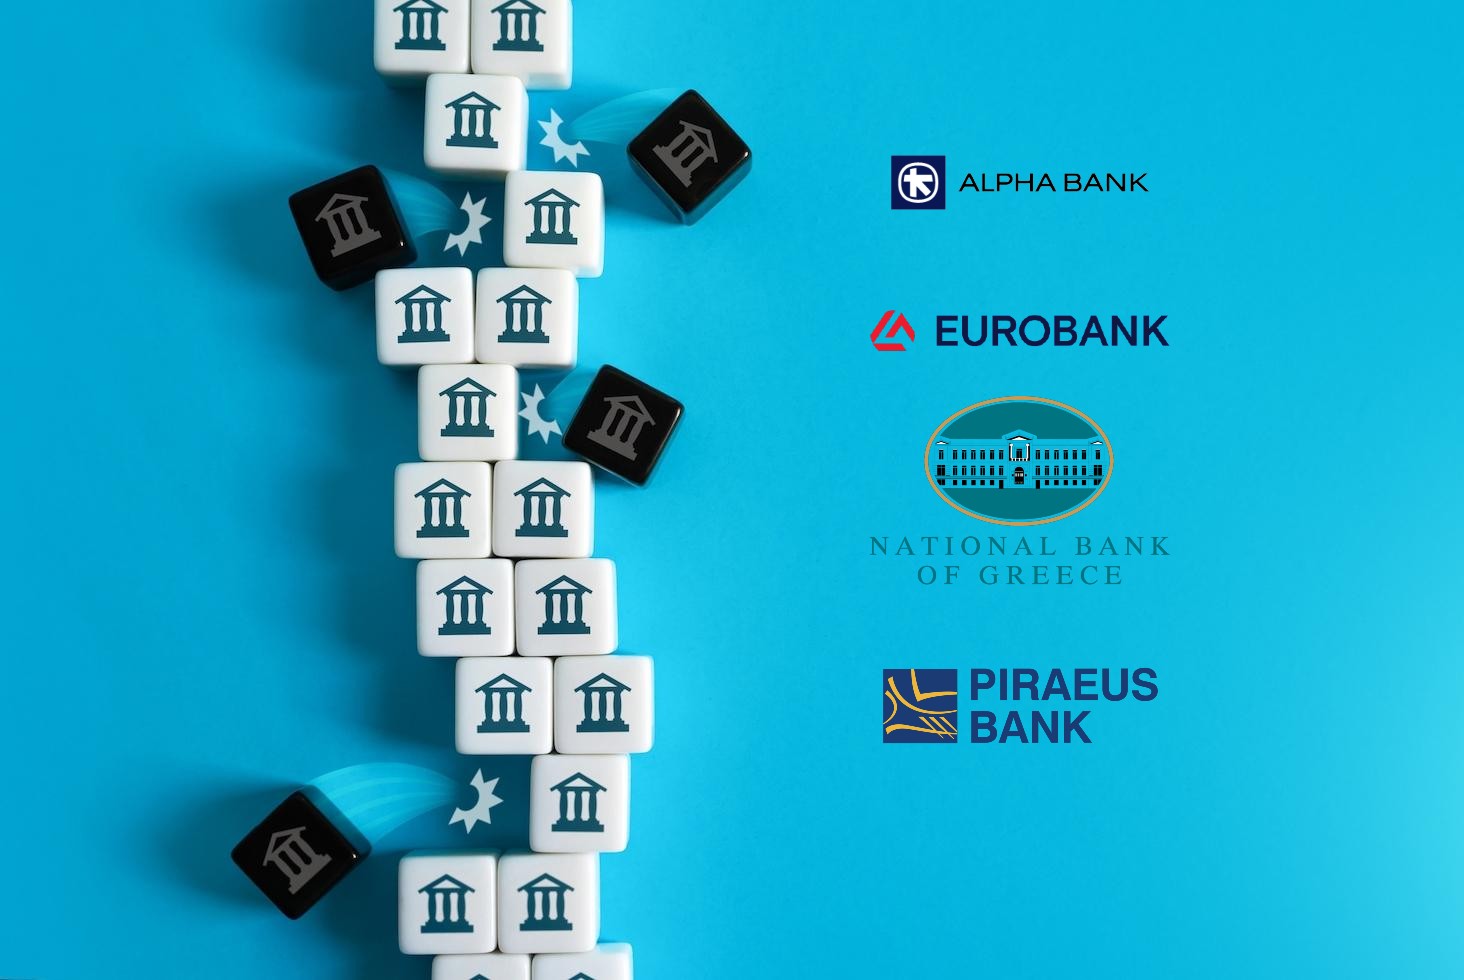 Πέρασαν εύκολα τα ευρωπαϊκά «τεστ αντοχής» οι Ελληνικές τράπεζες